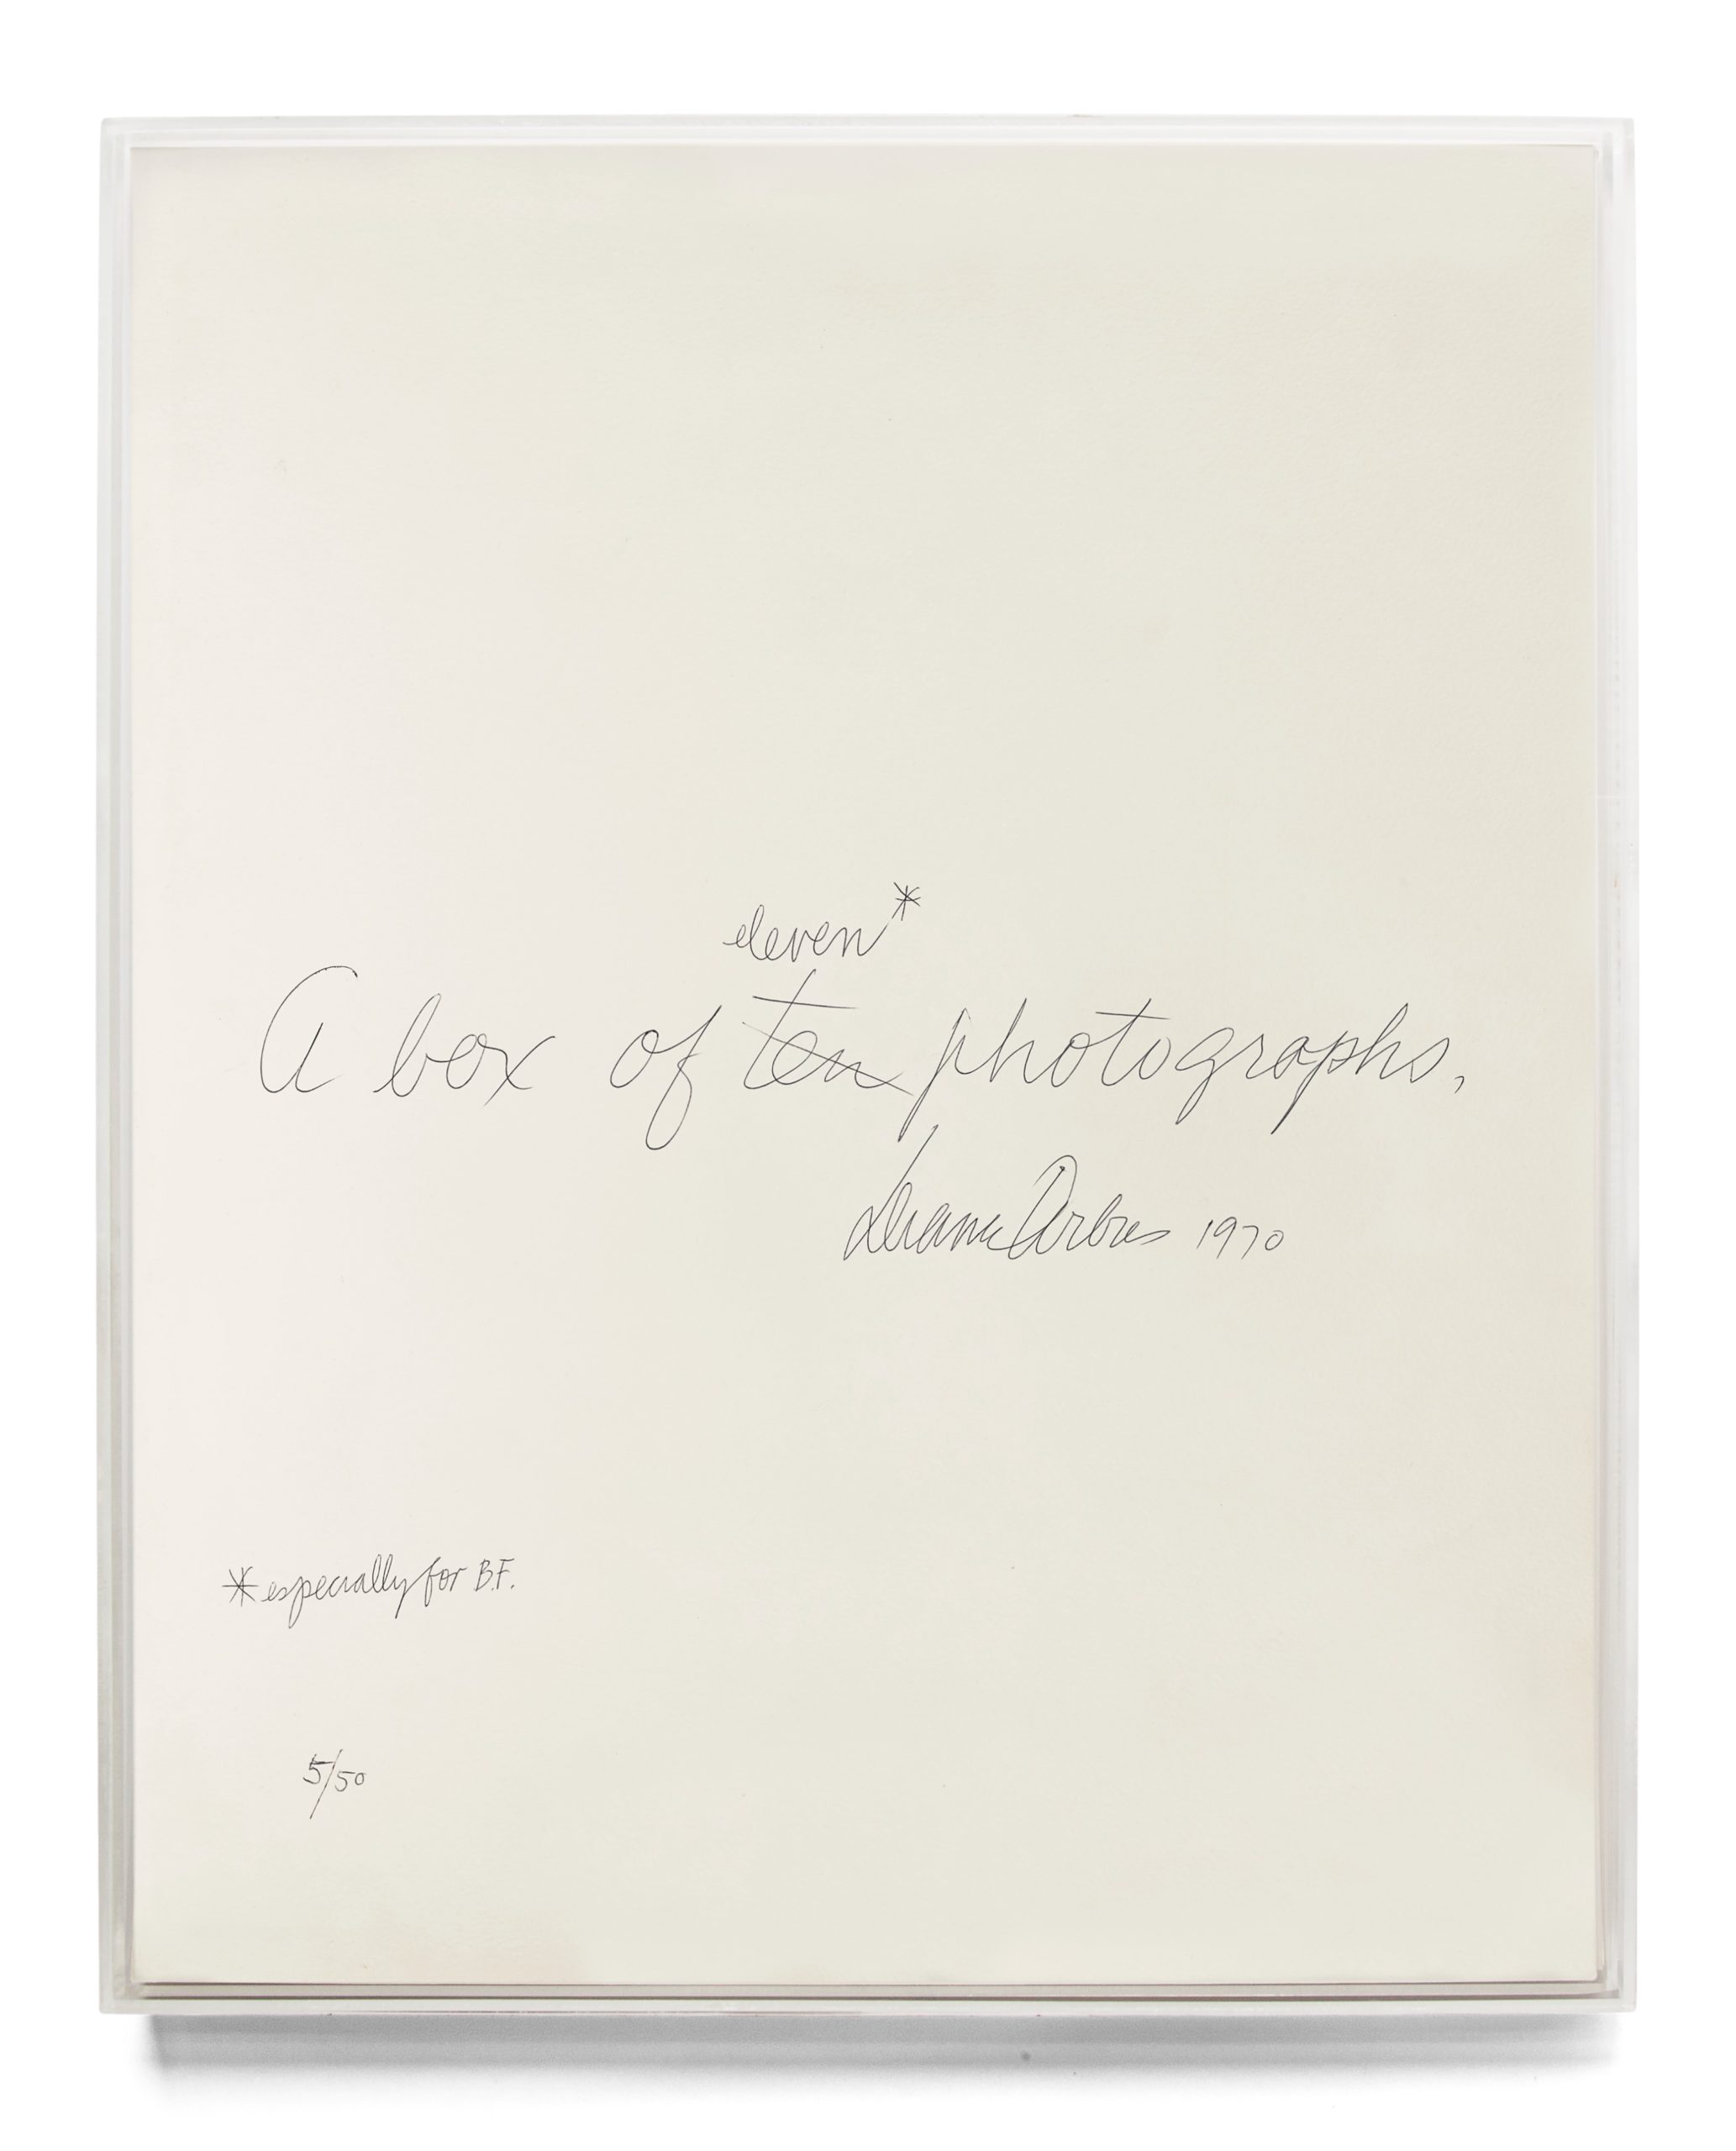 The cover of Diane Arbus' photobook.